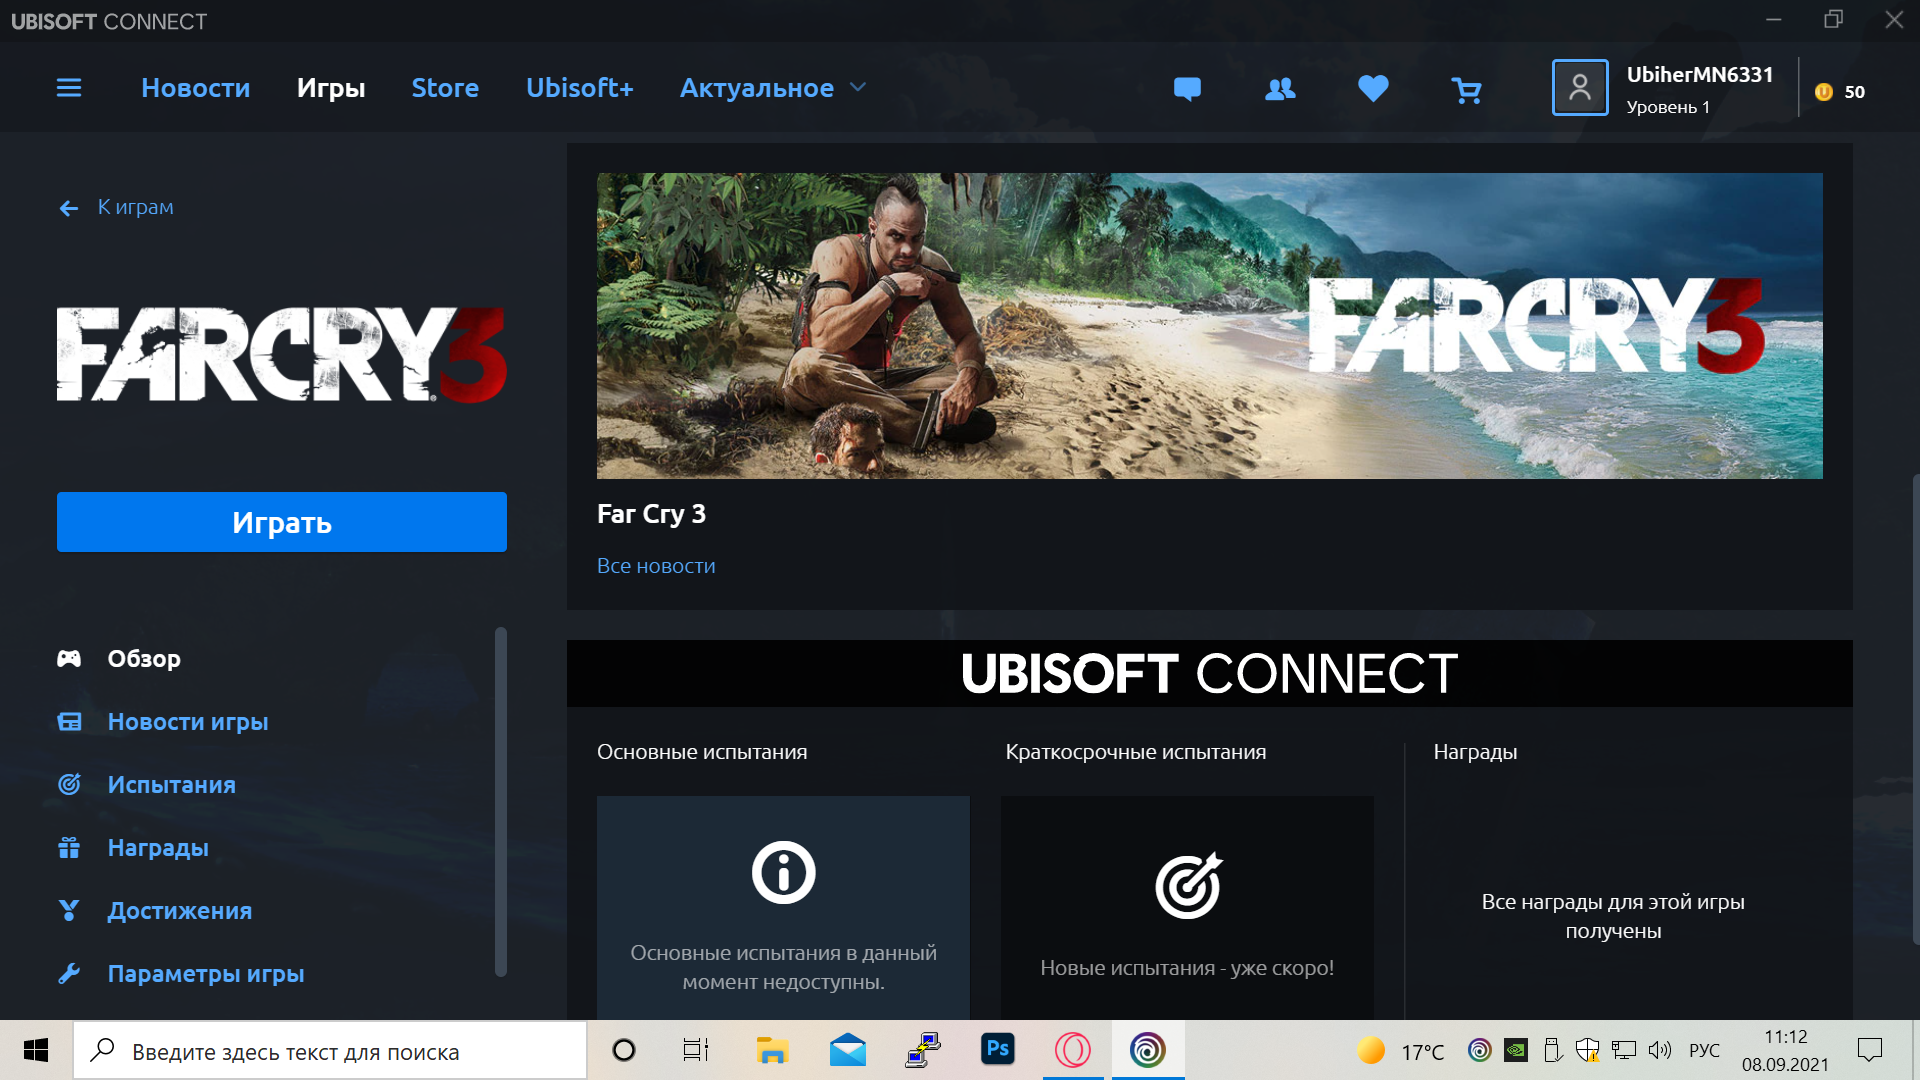 продажа предметов, вещей Far Cry 3 - Far Cry New Dawn - Far Cry 5 - Ключи в Steam